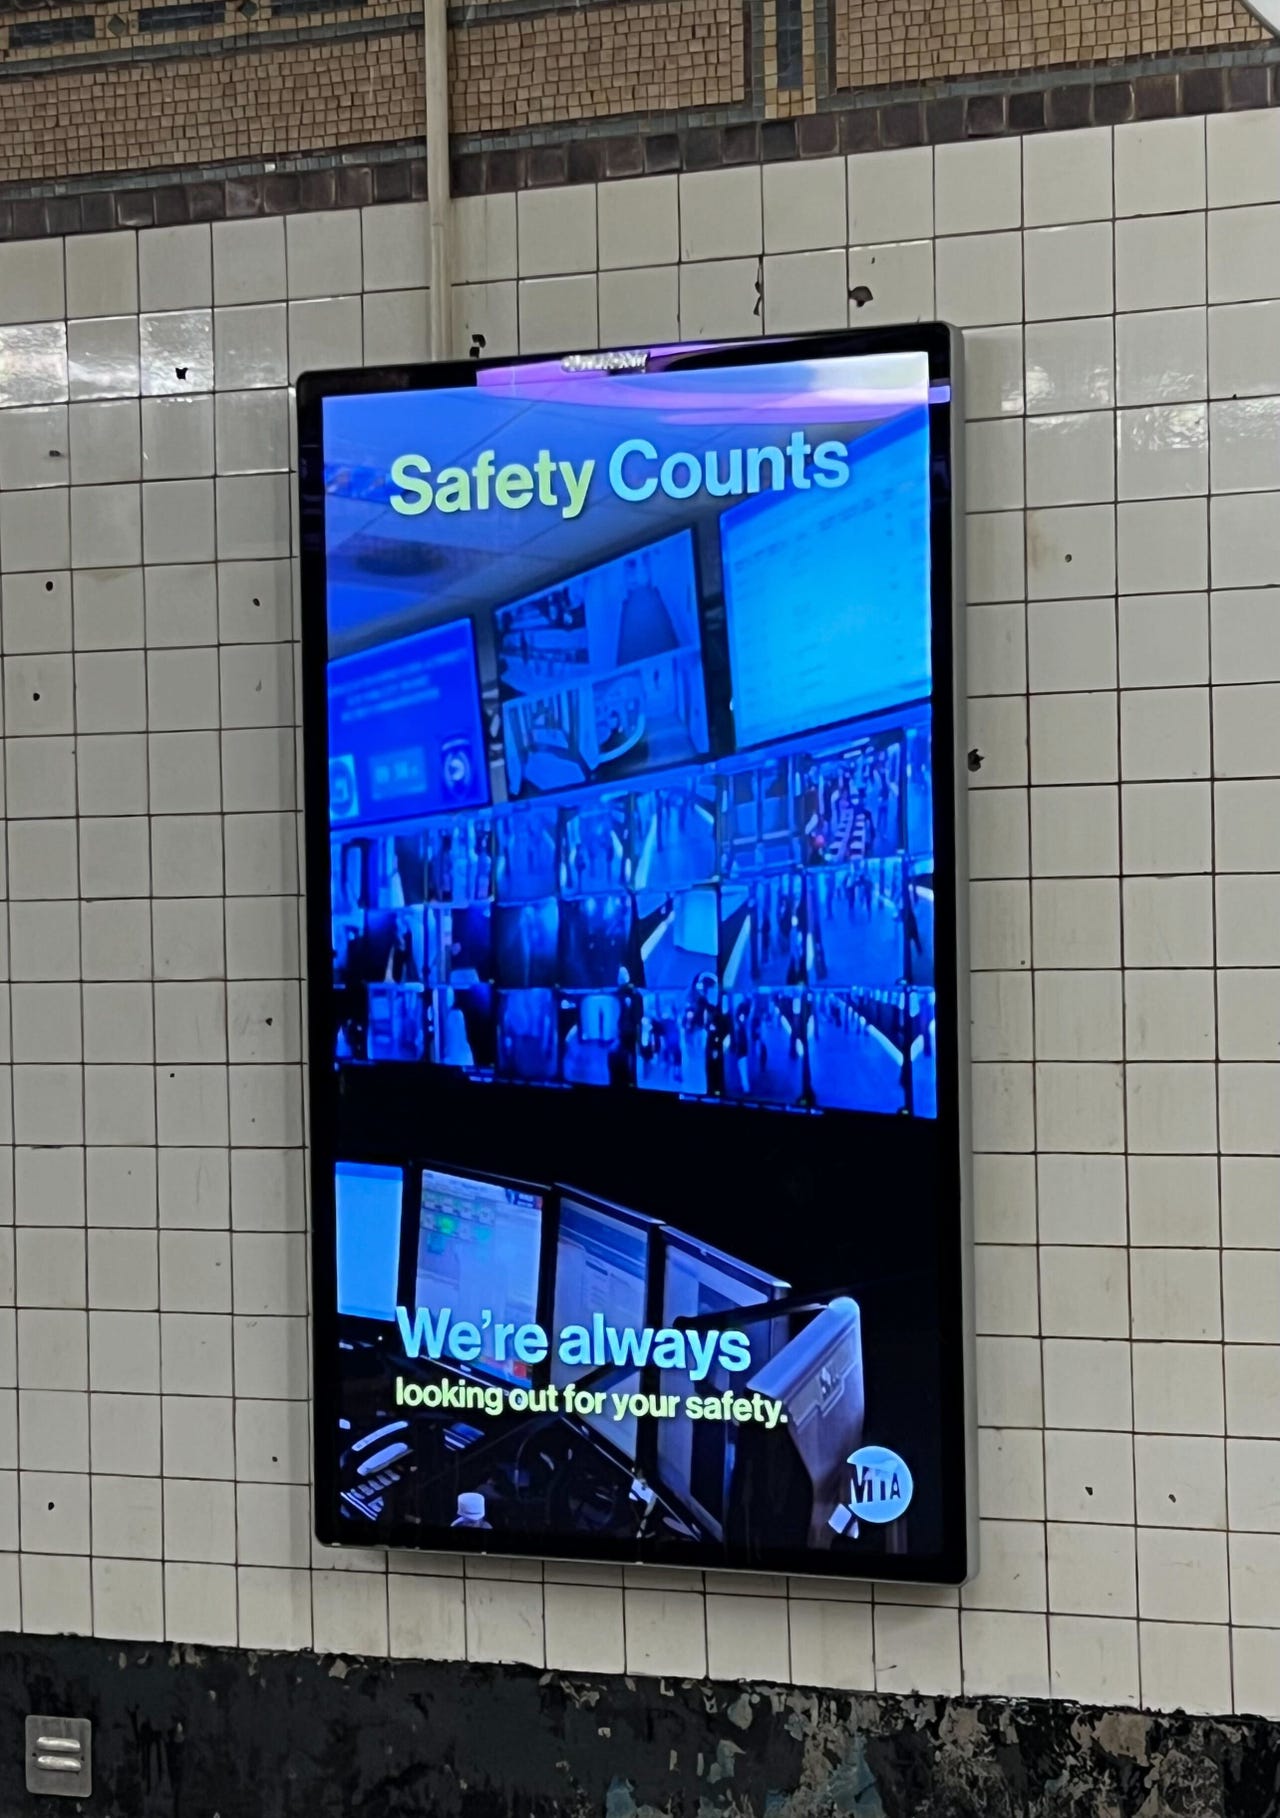 No, NYC Subways Still Aren't Safe